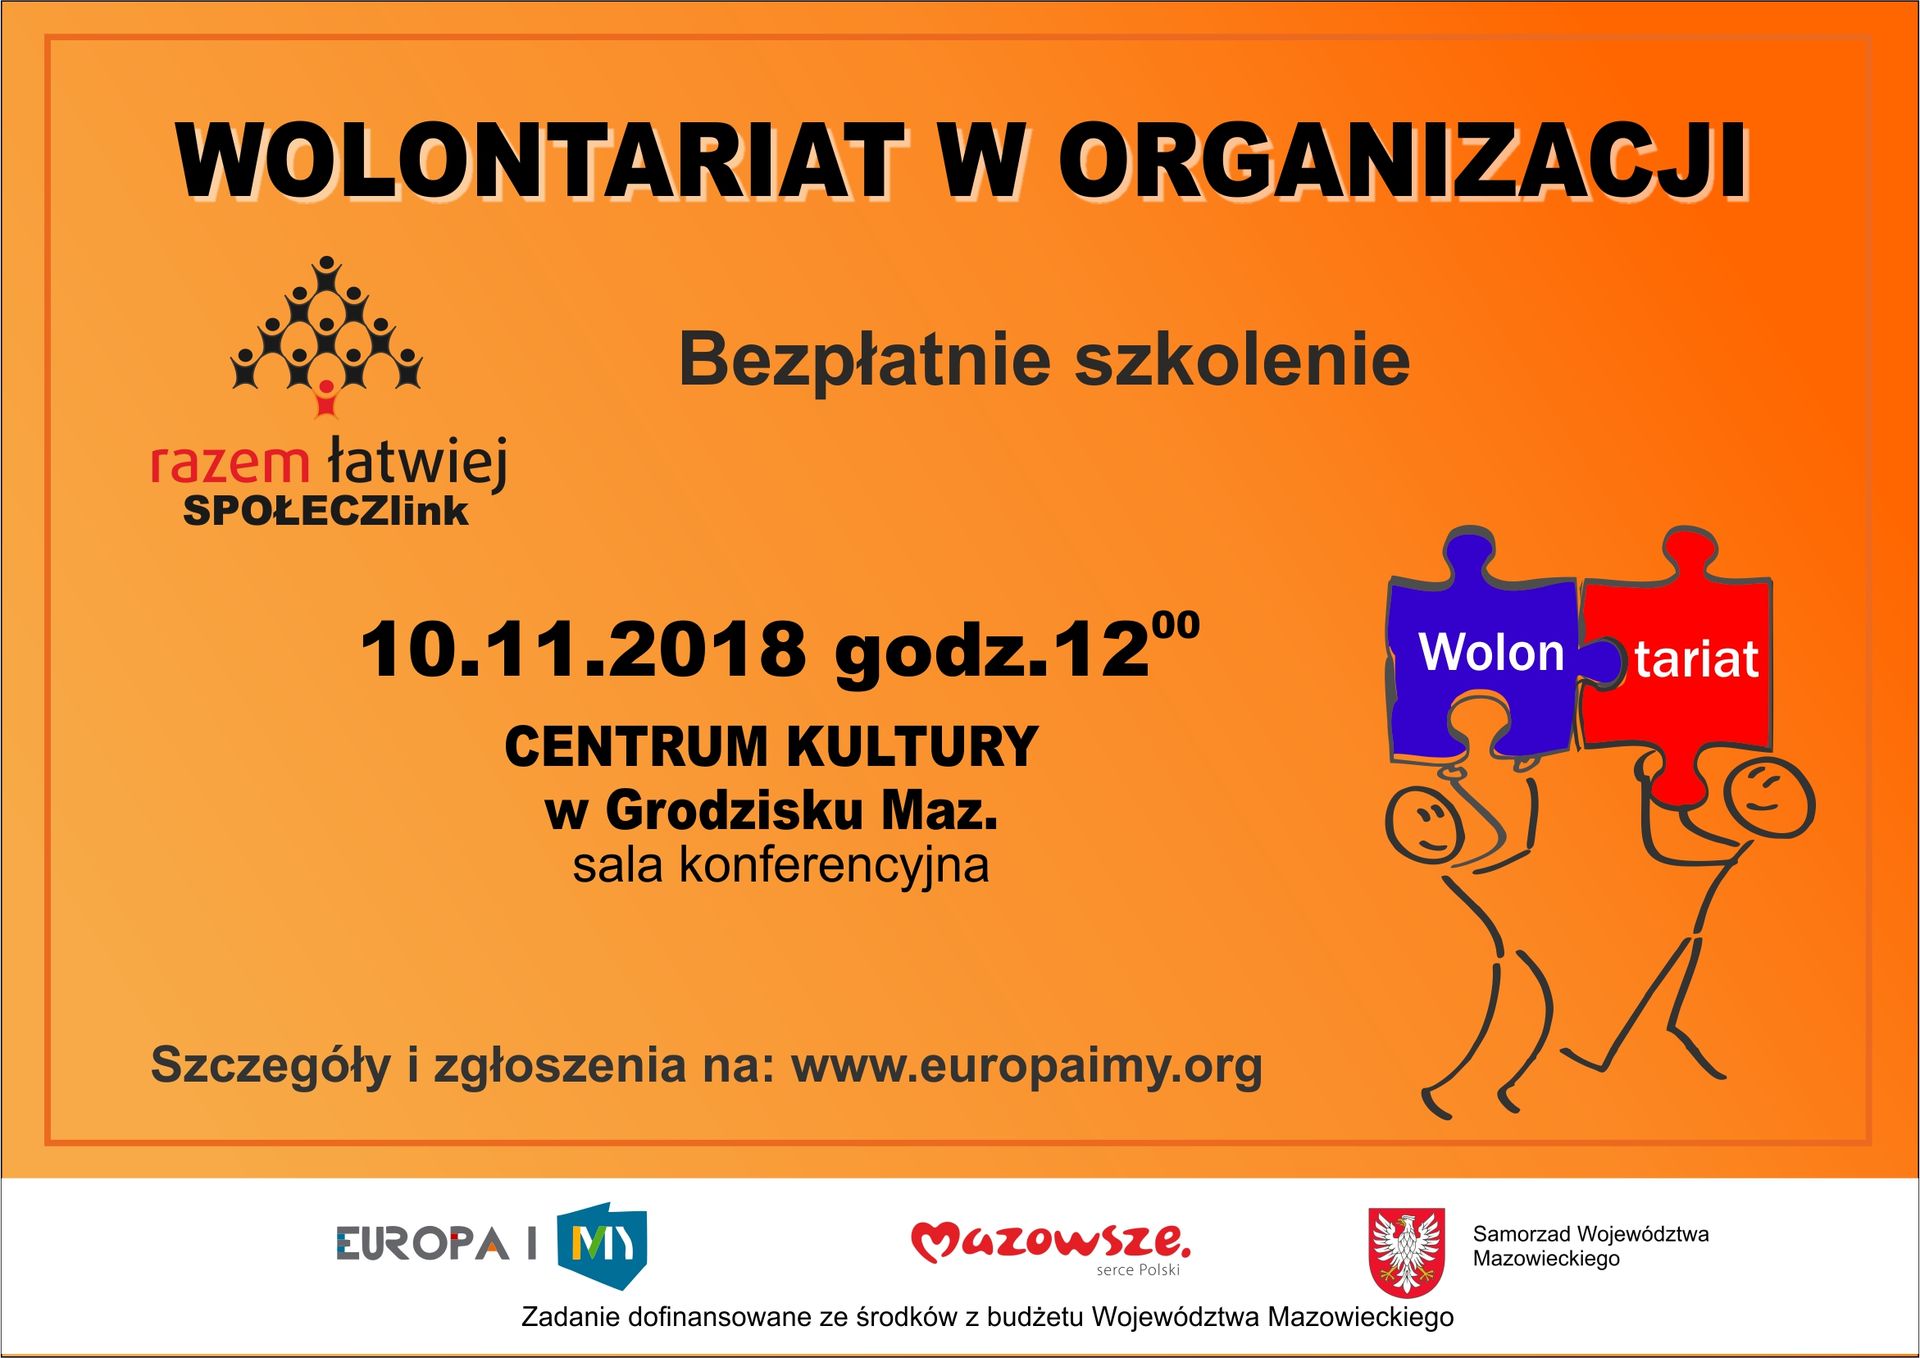 Plakat informujący o bezpłatnym szkoleniu "Wolontariat w organizacji"